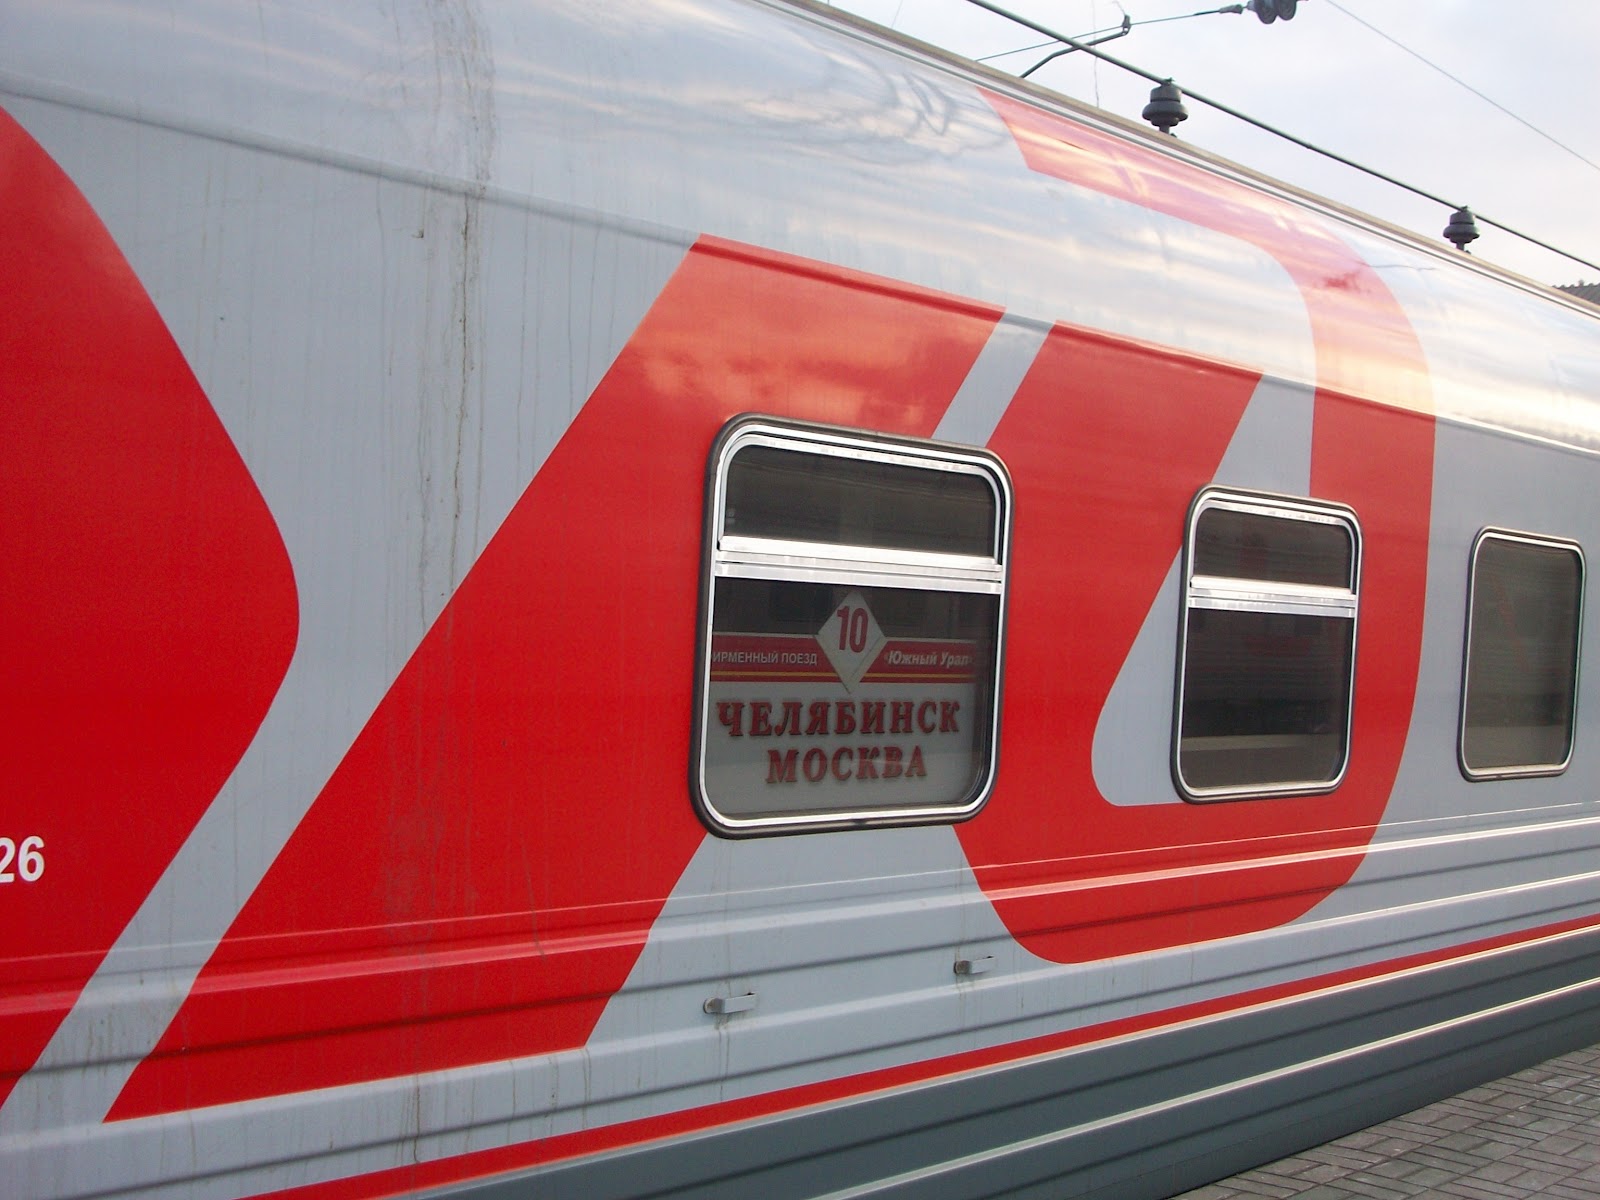 фирменный поезд челябинск москва